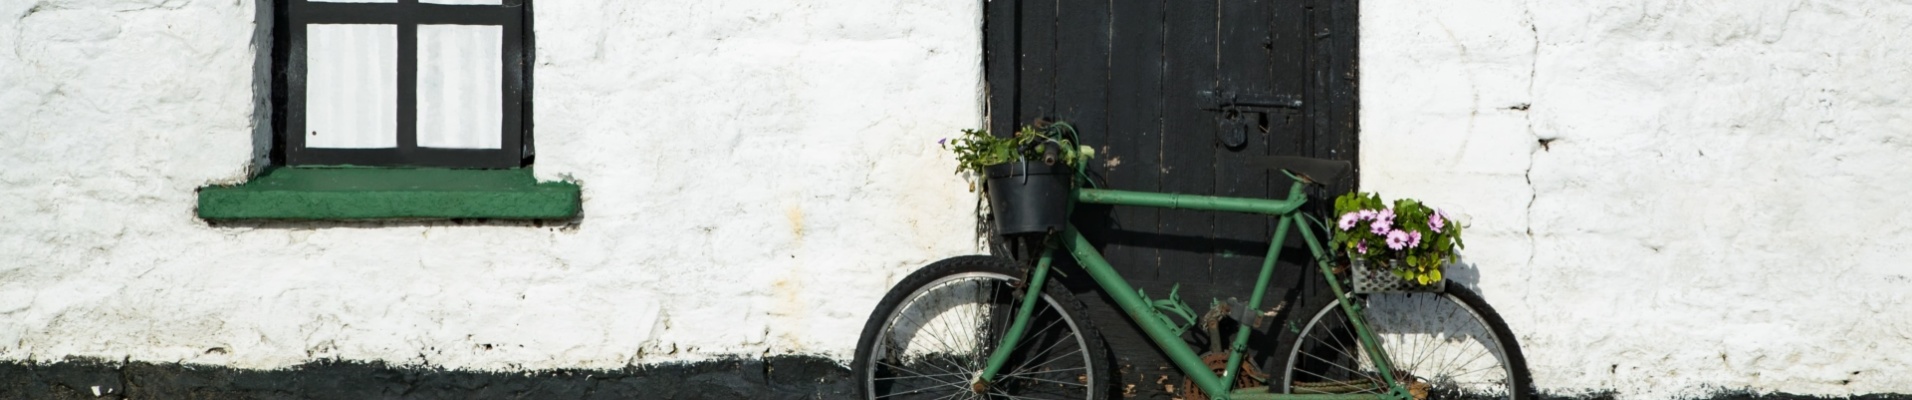 Vieux vélo devant un cottage traditionnel, Irlande